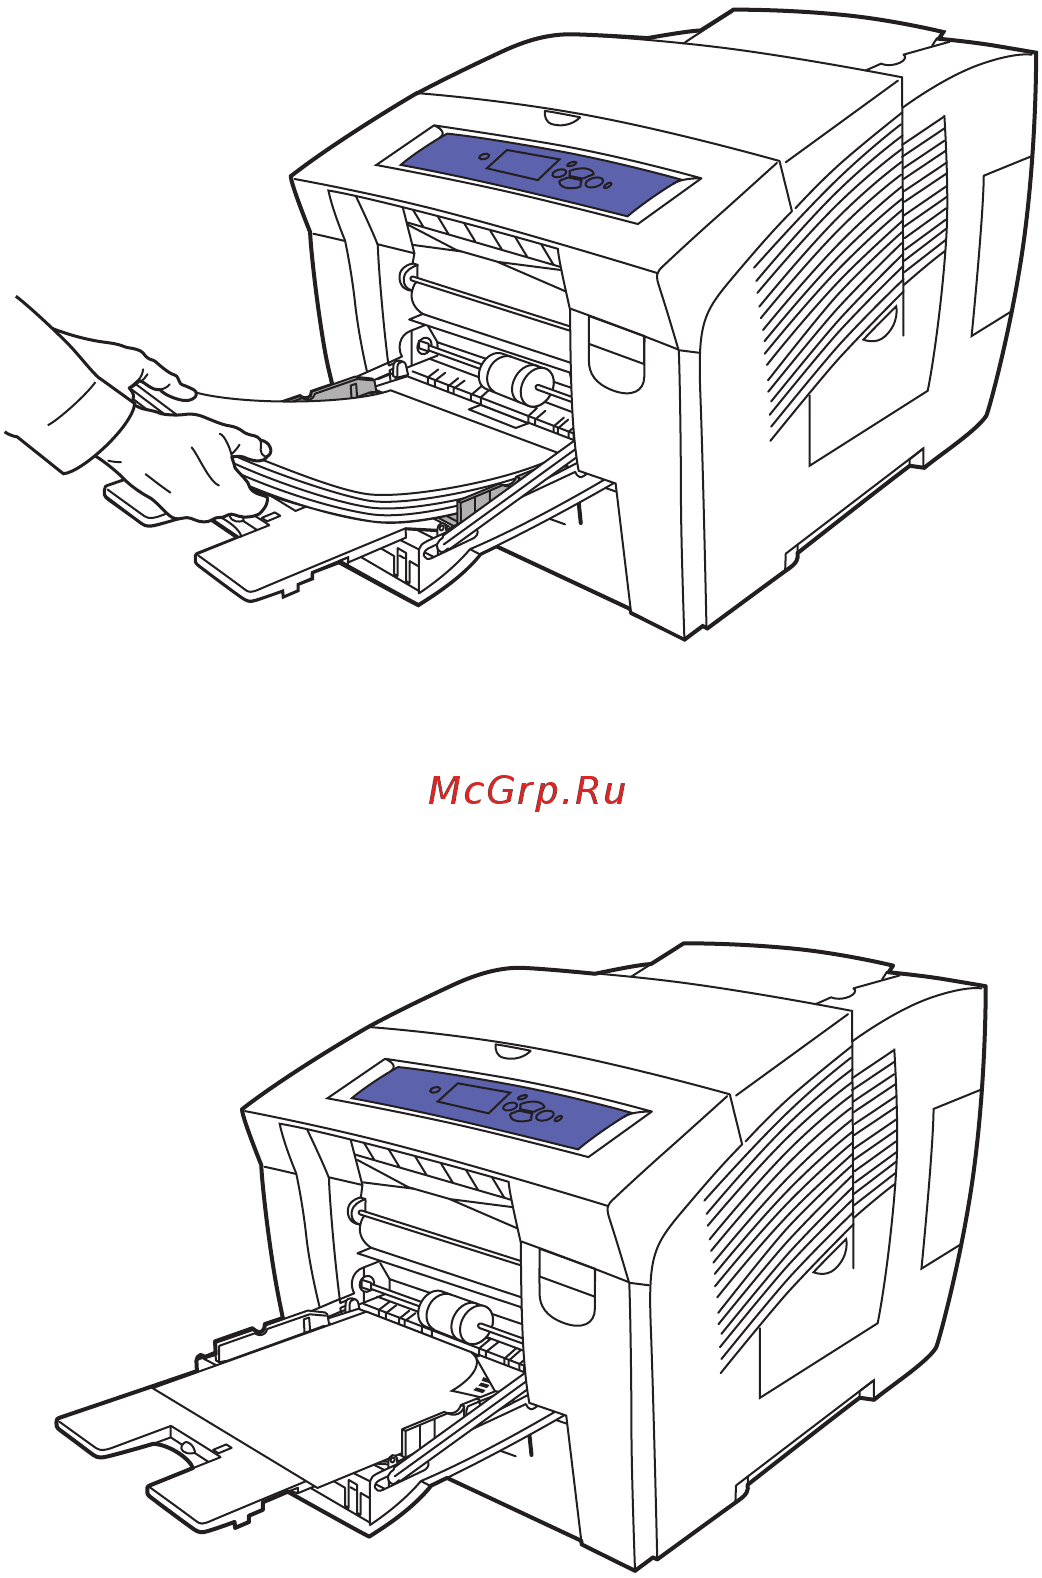 Как вставить бумагу в принтер. описание процесса загрузки листов